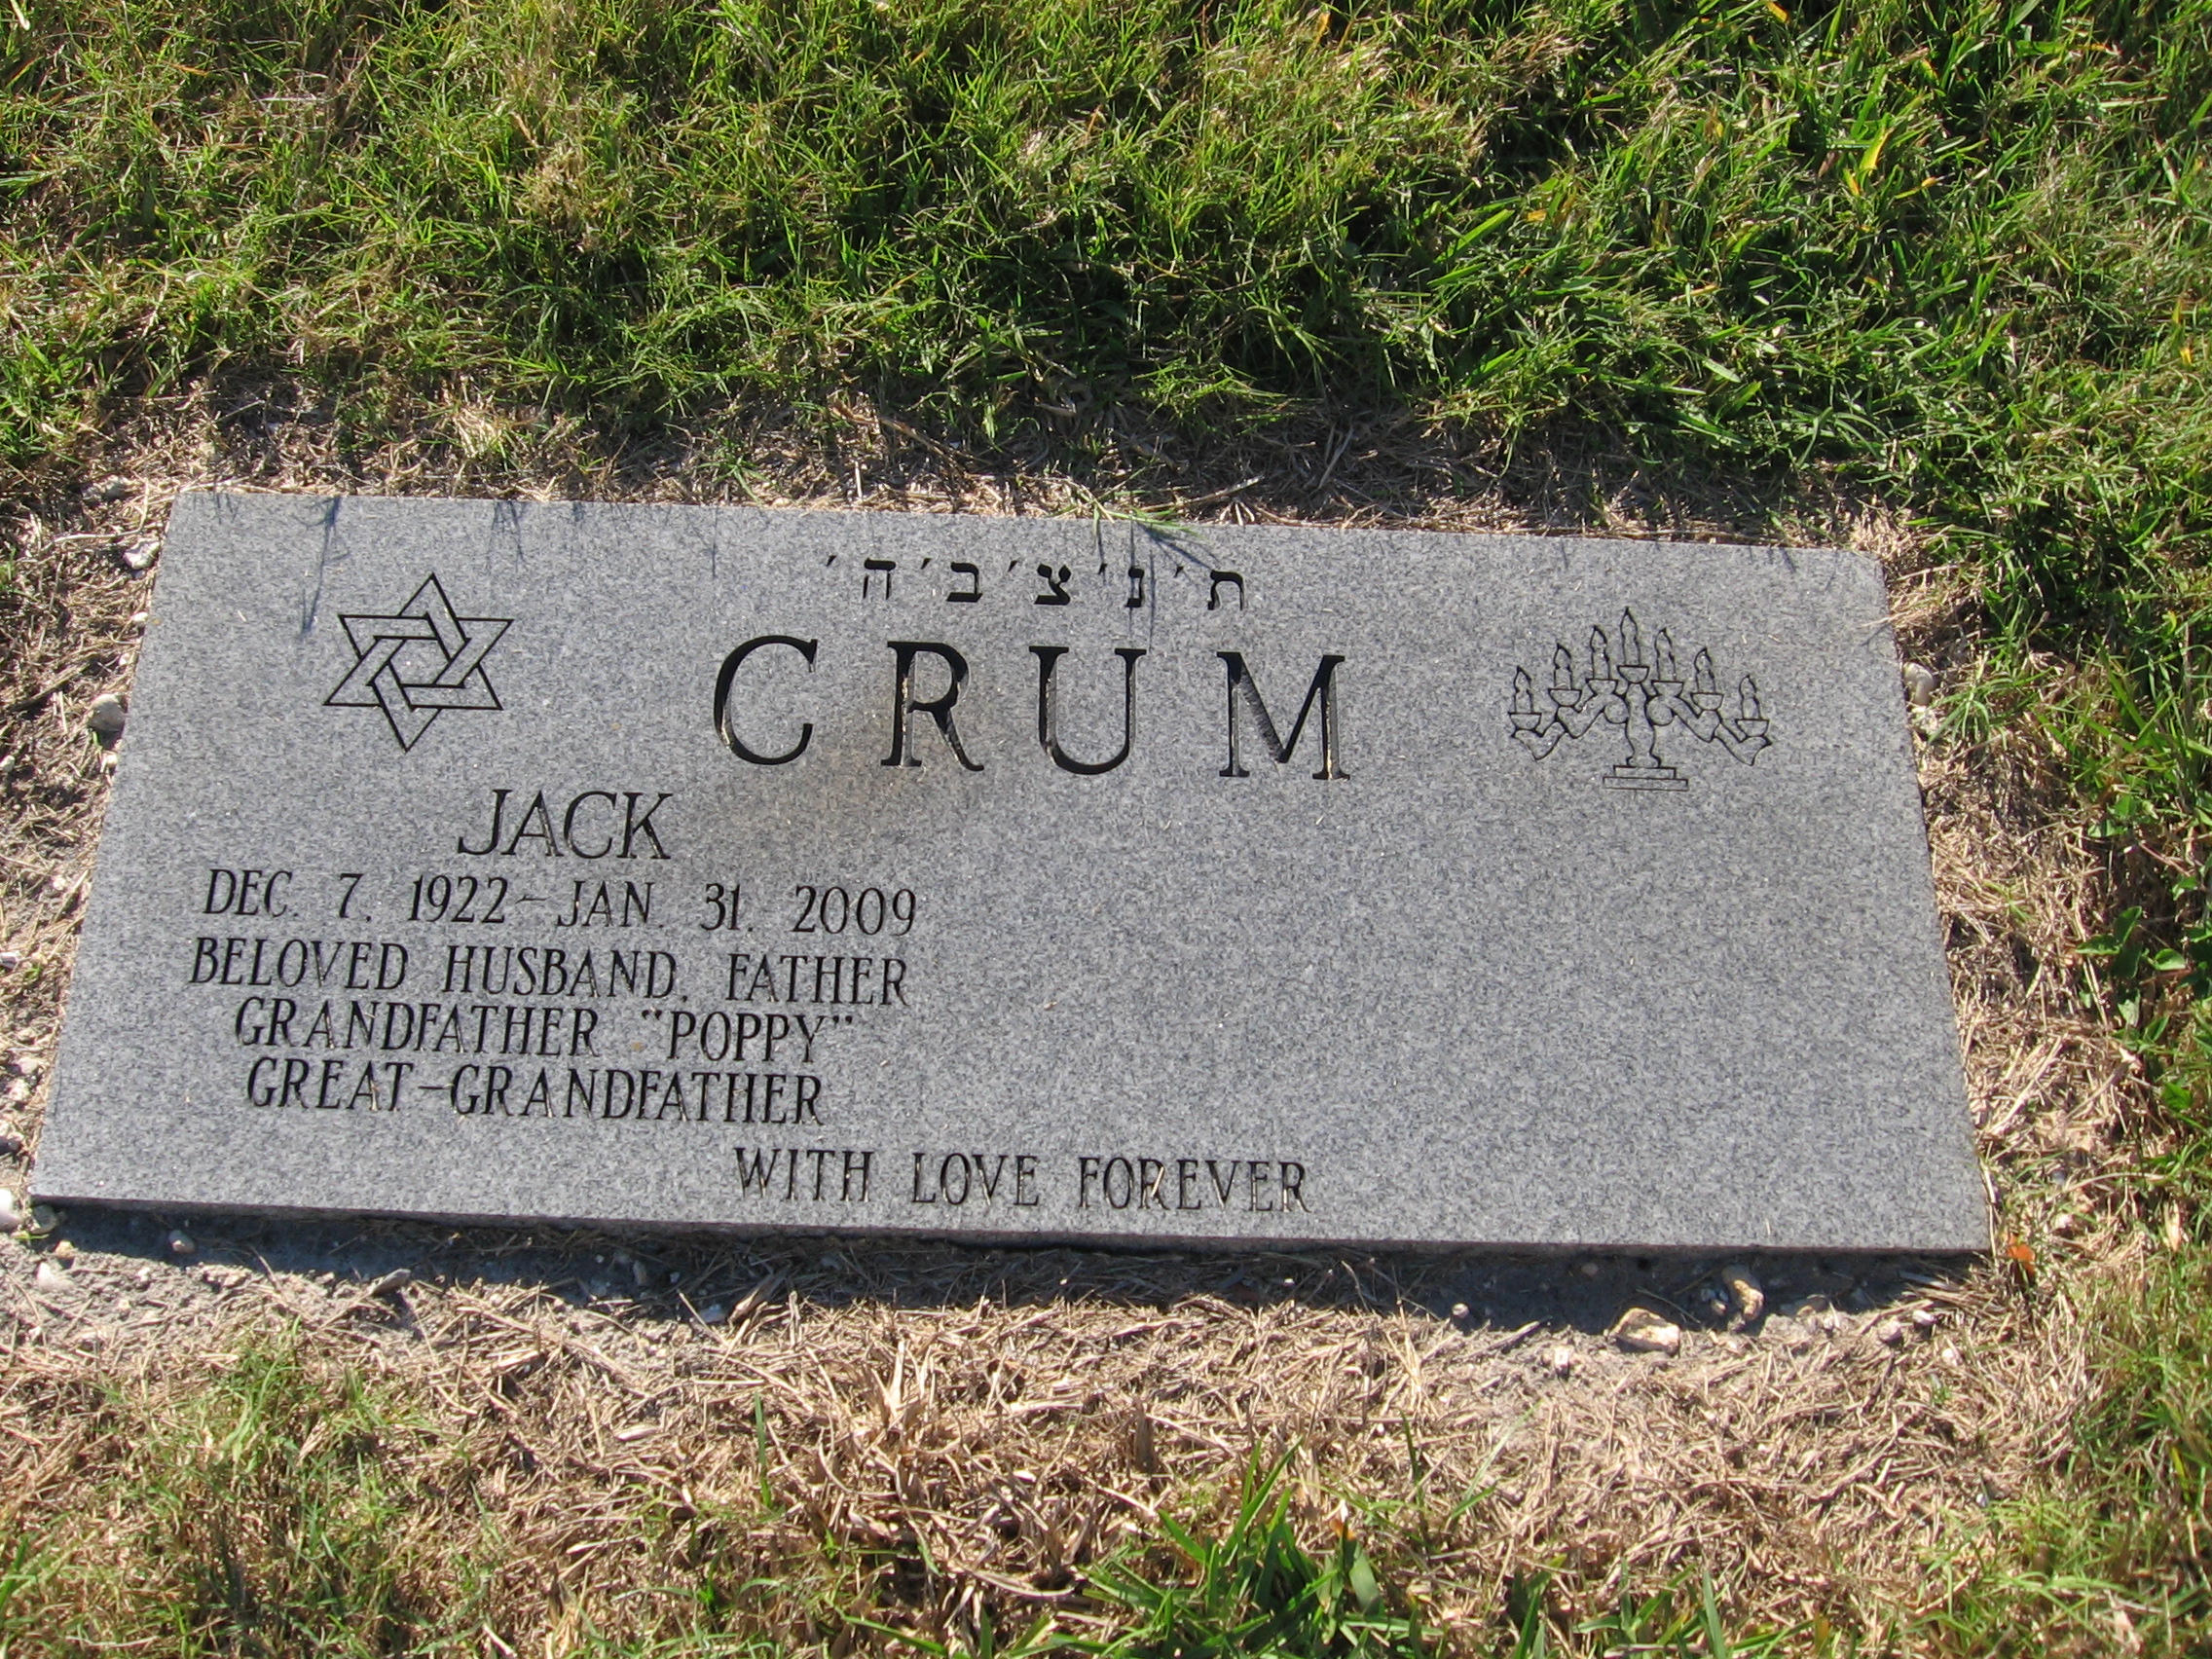 Jack Crum